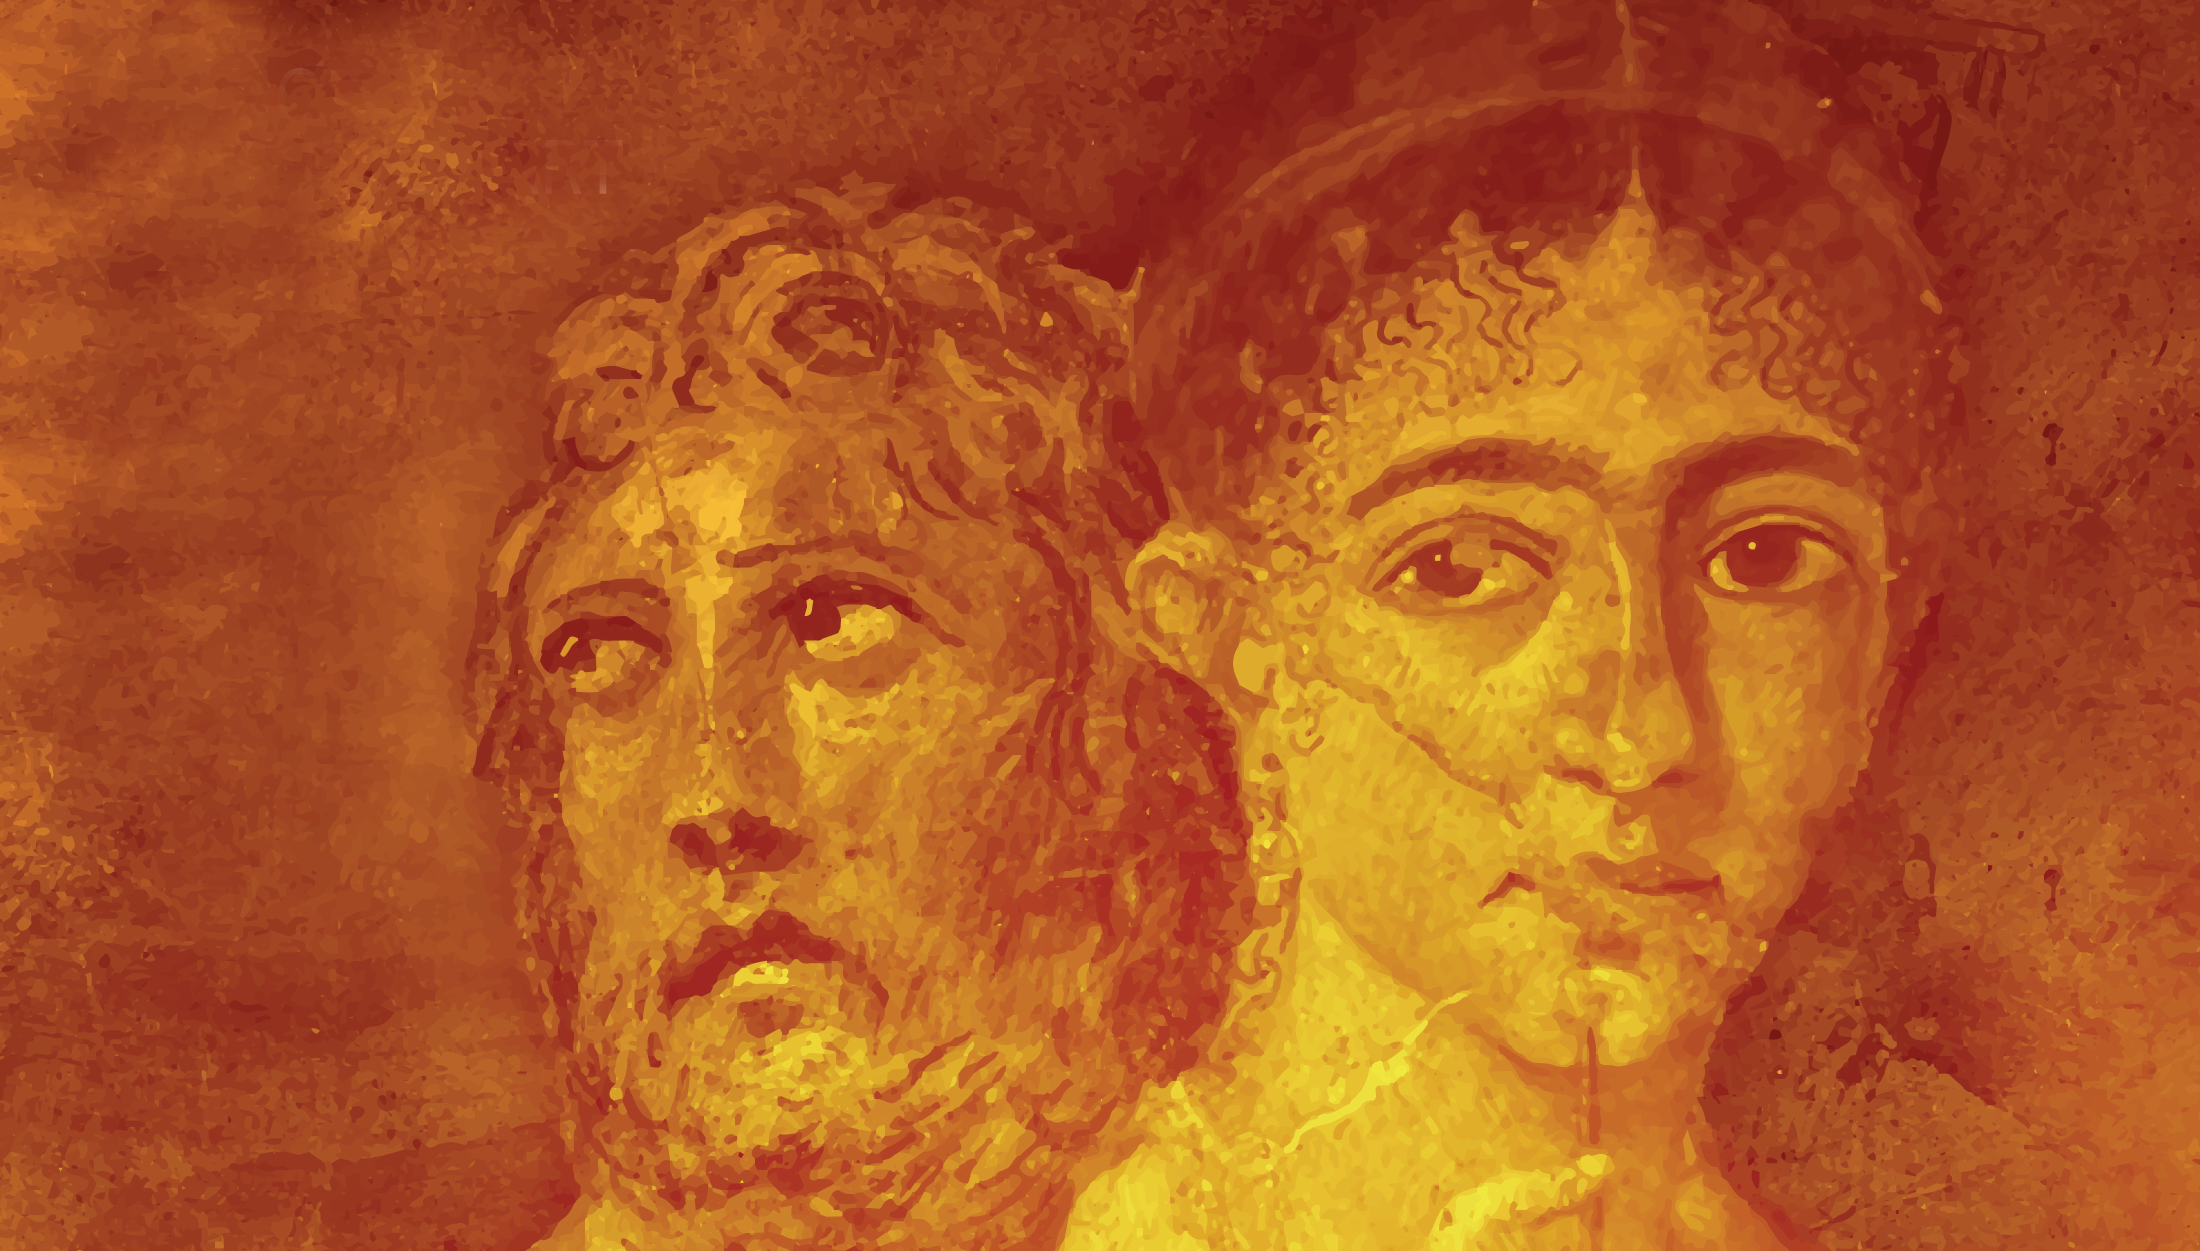 Pompeii image no logos